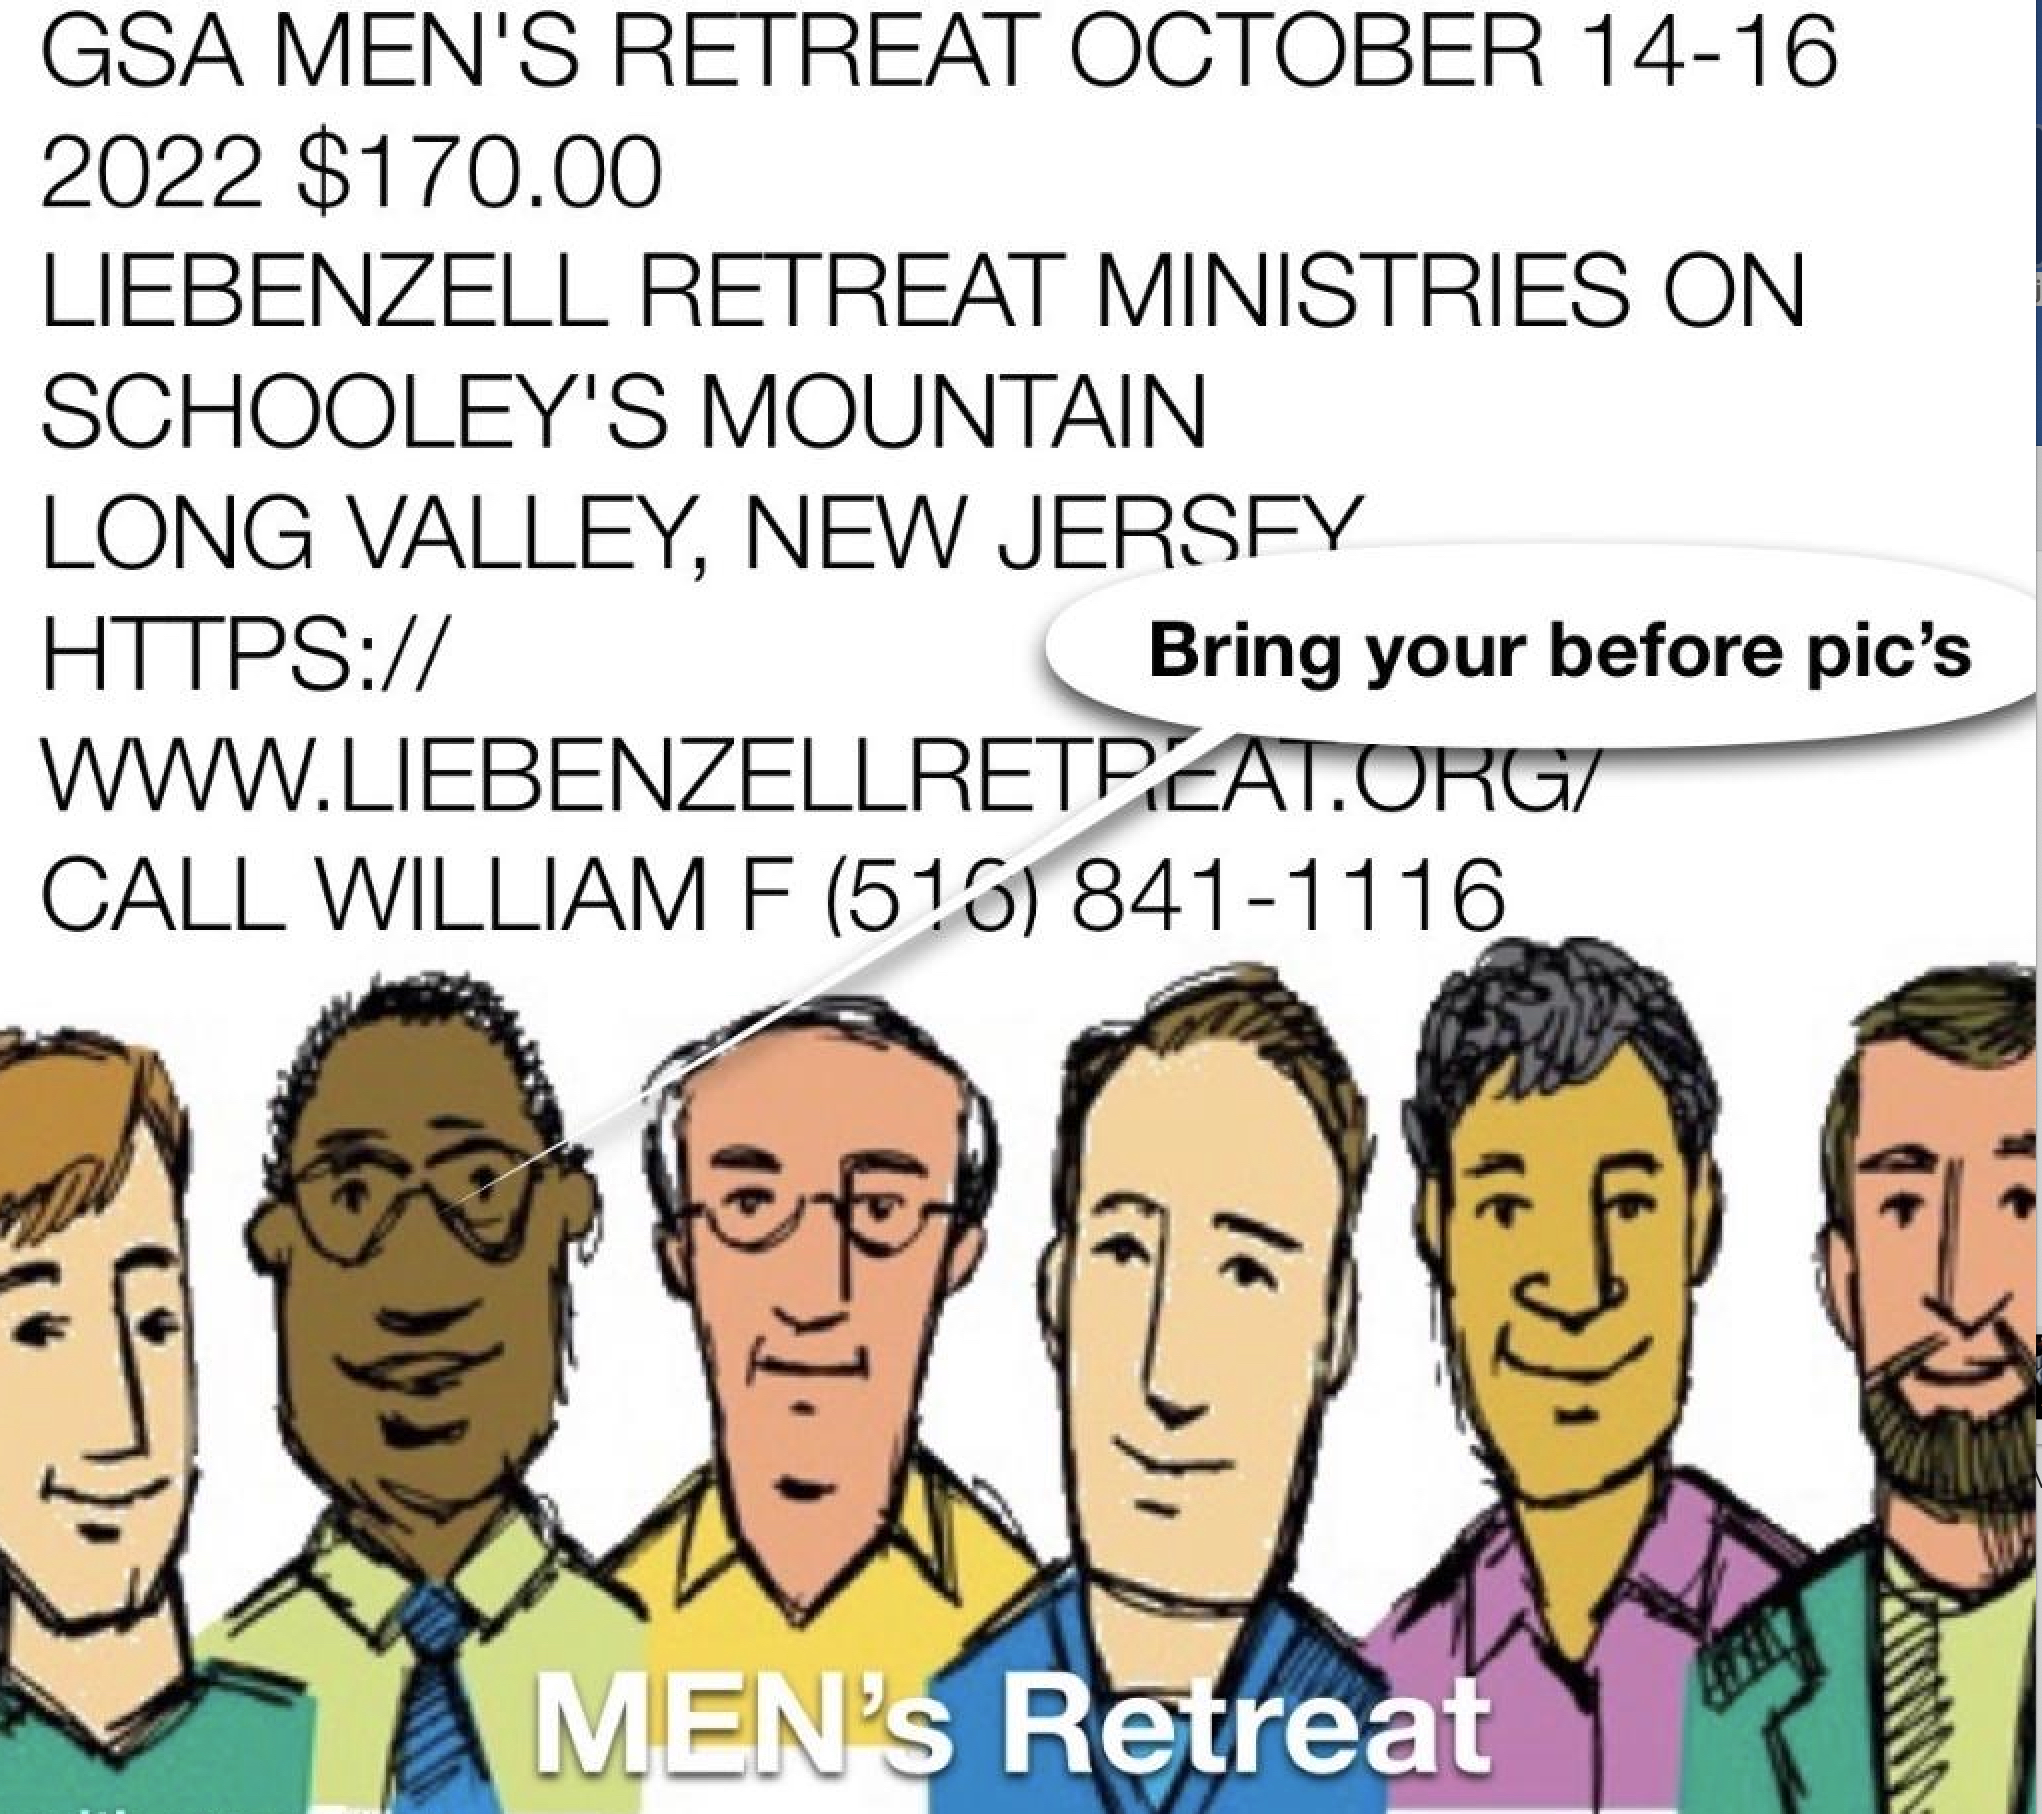 GSA MEN'S RETREAT OCTOBER 14-16 2022 